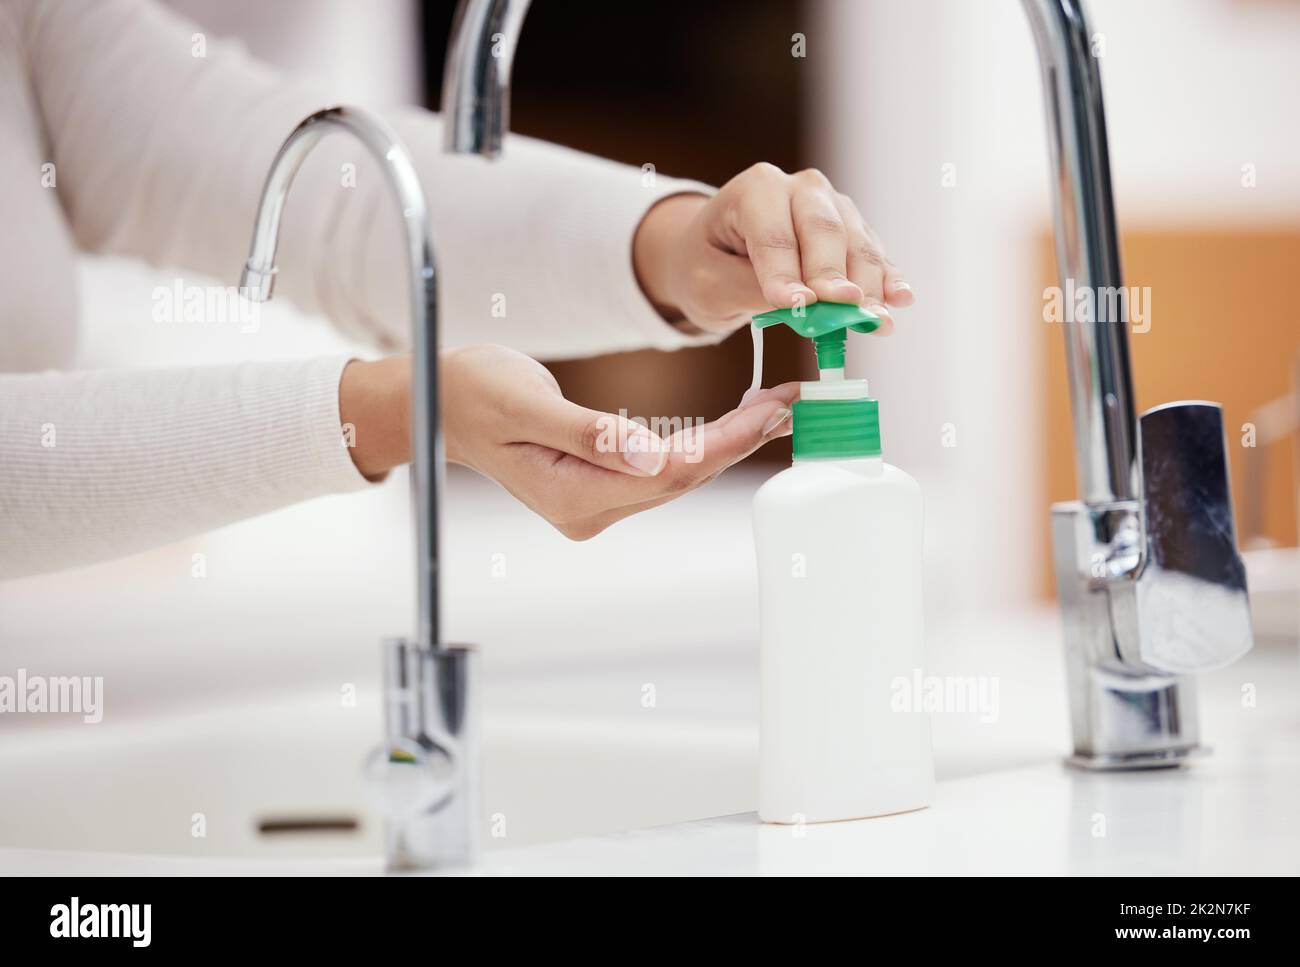 Non dimenticate di usare il sapone. Shot di una persona irriconoscibile lavarsi le mani con sapone a casa. Foto Stock